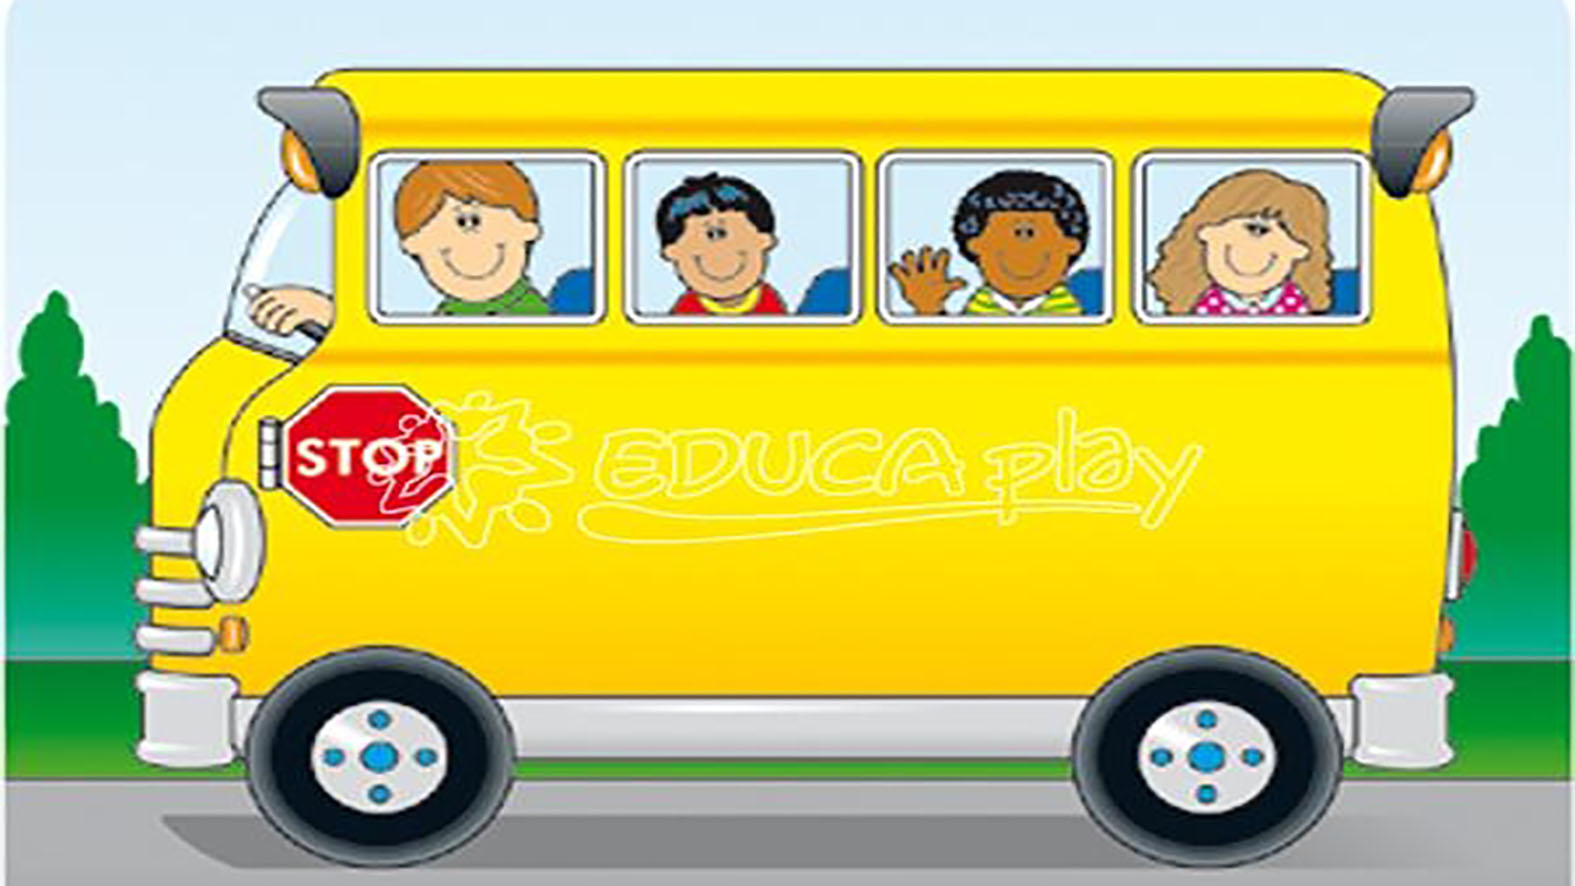 V Trstenej bude premávať bezplatný školský autobus